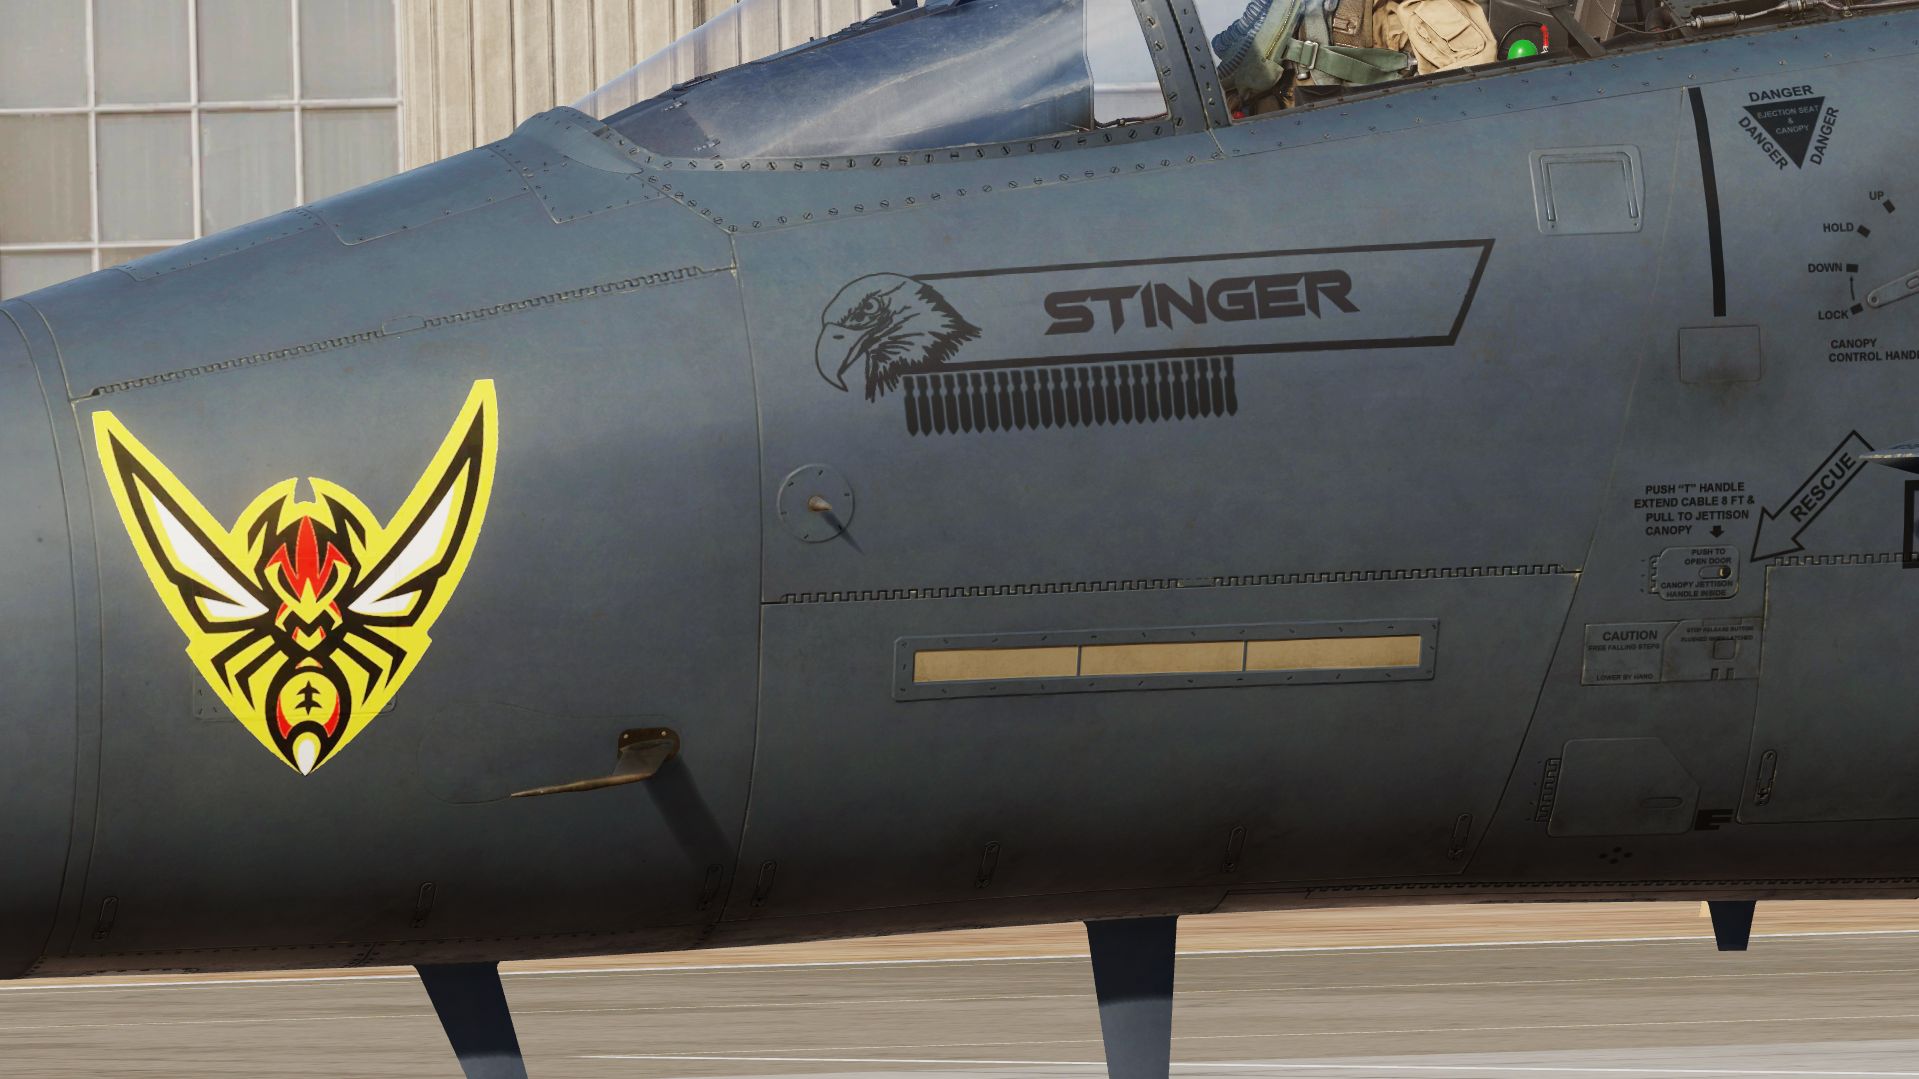 F-15E Strike eagle MO 87-201 "STINGER"